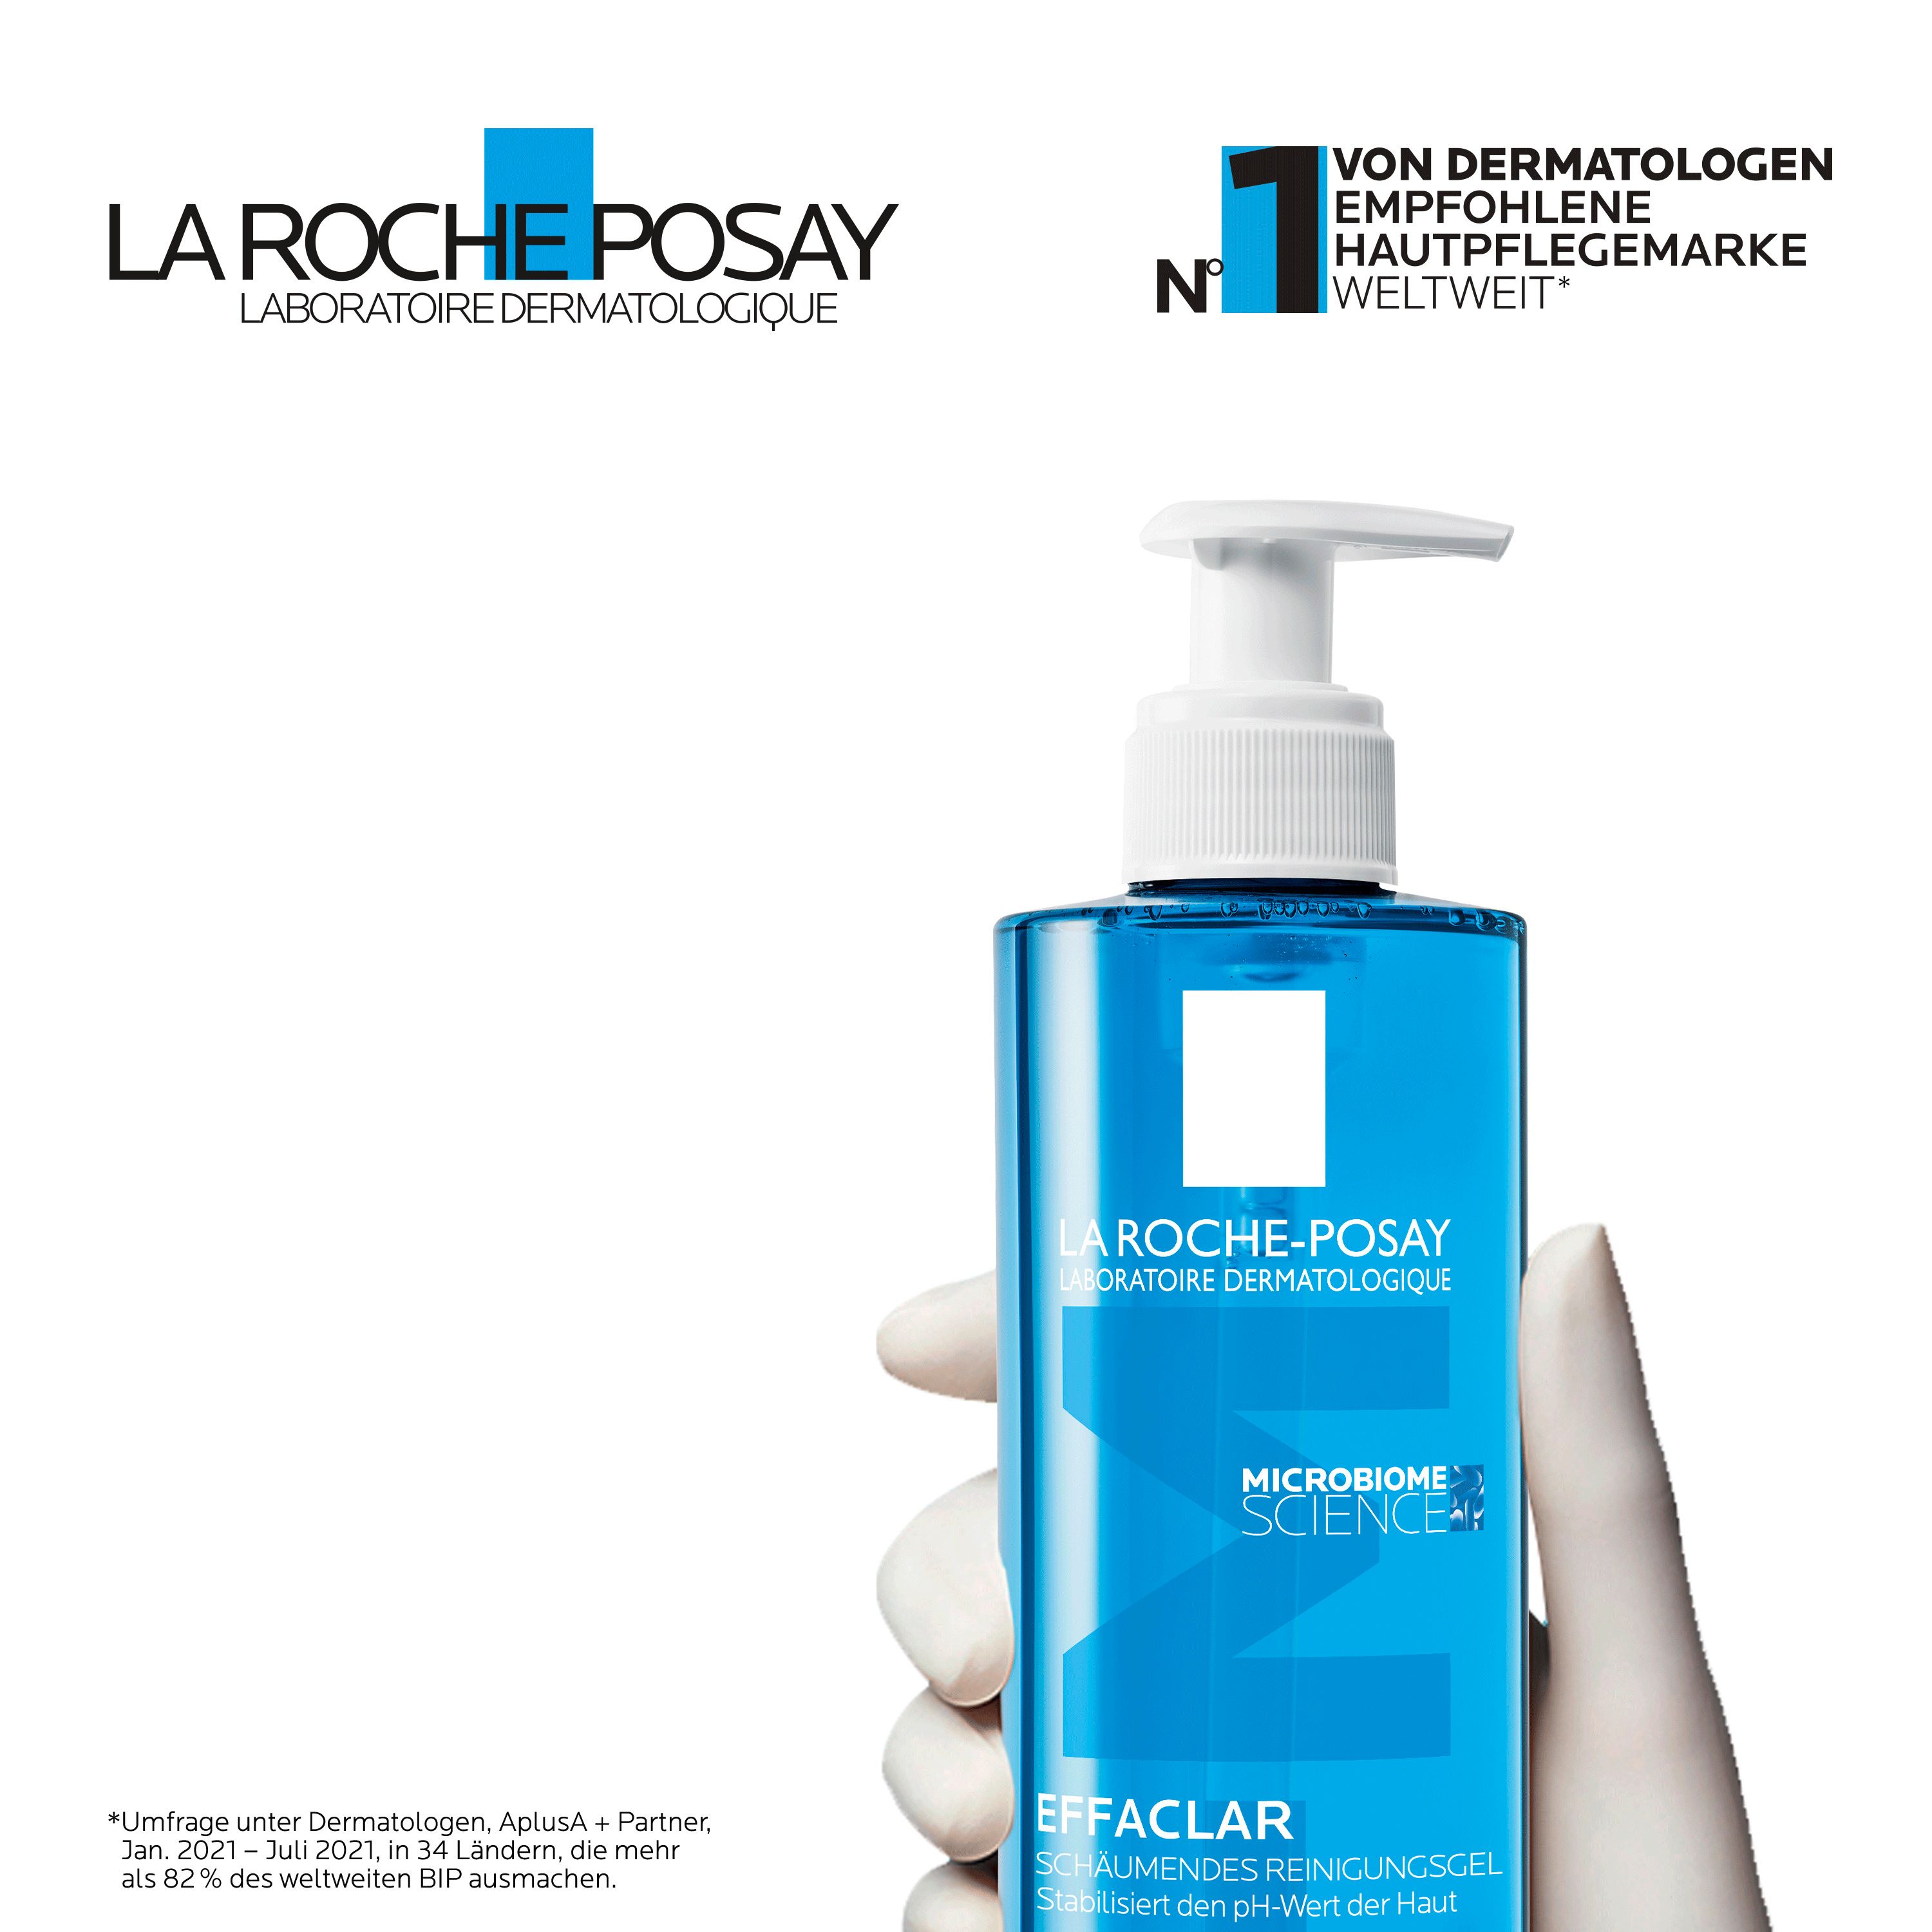  La Roche Posay Effaclar Schäumendes Reinigungsgel: Sanfte und erfrischende Reinigung für zu Akne neigende und fettige Haut